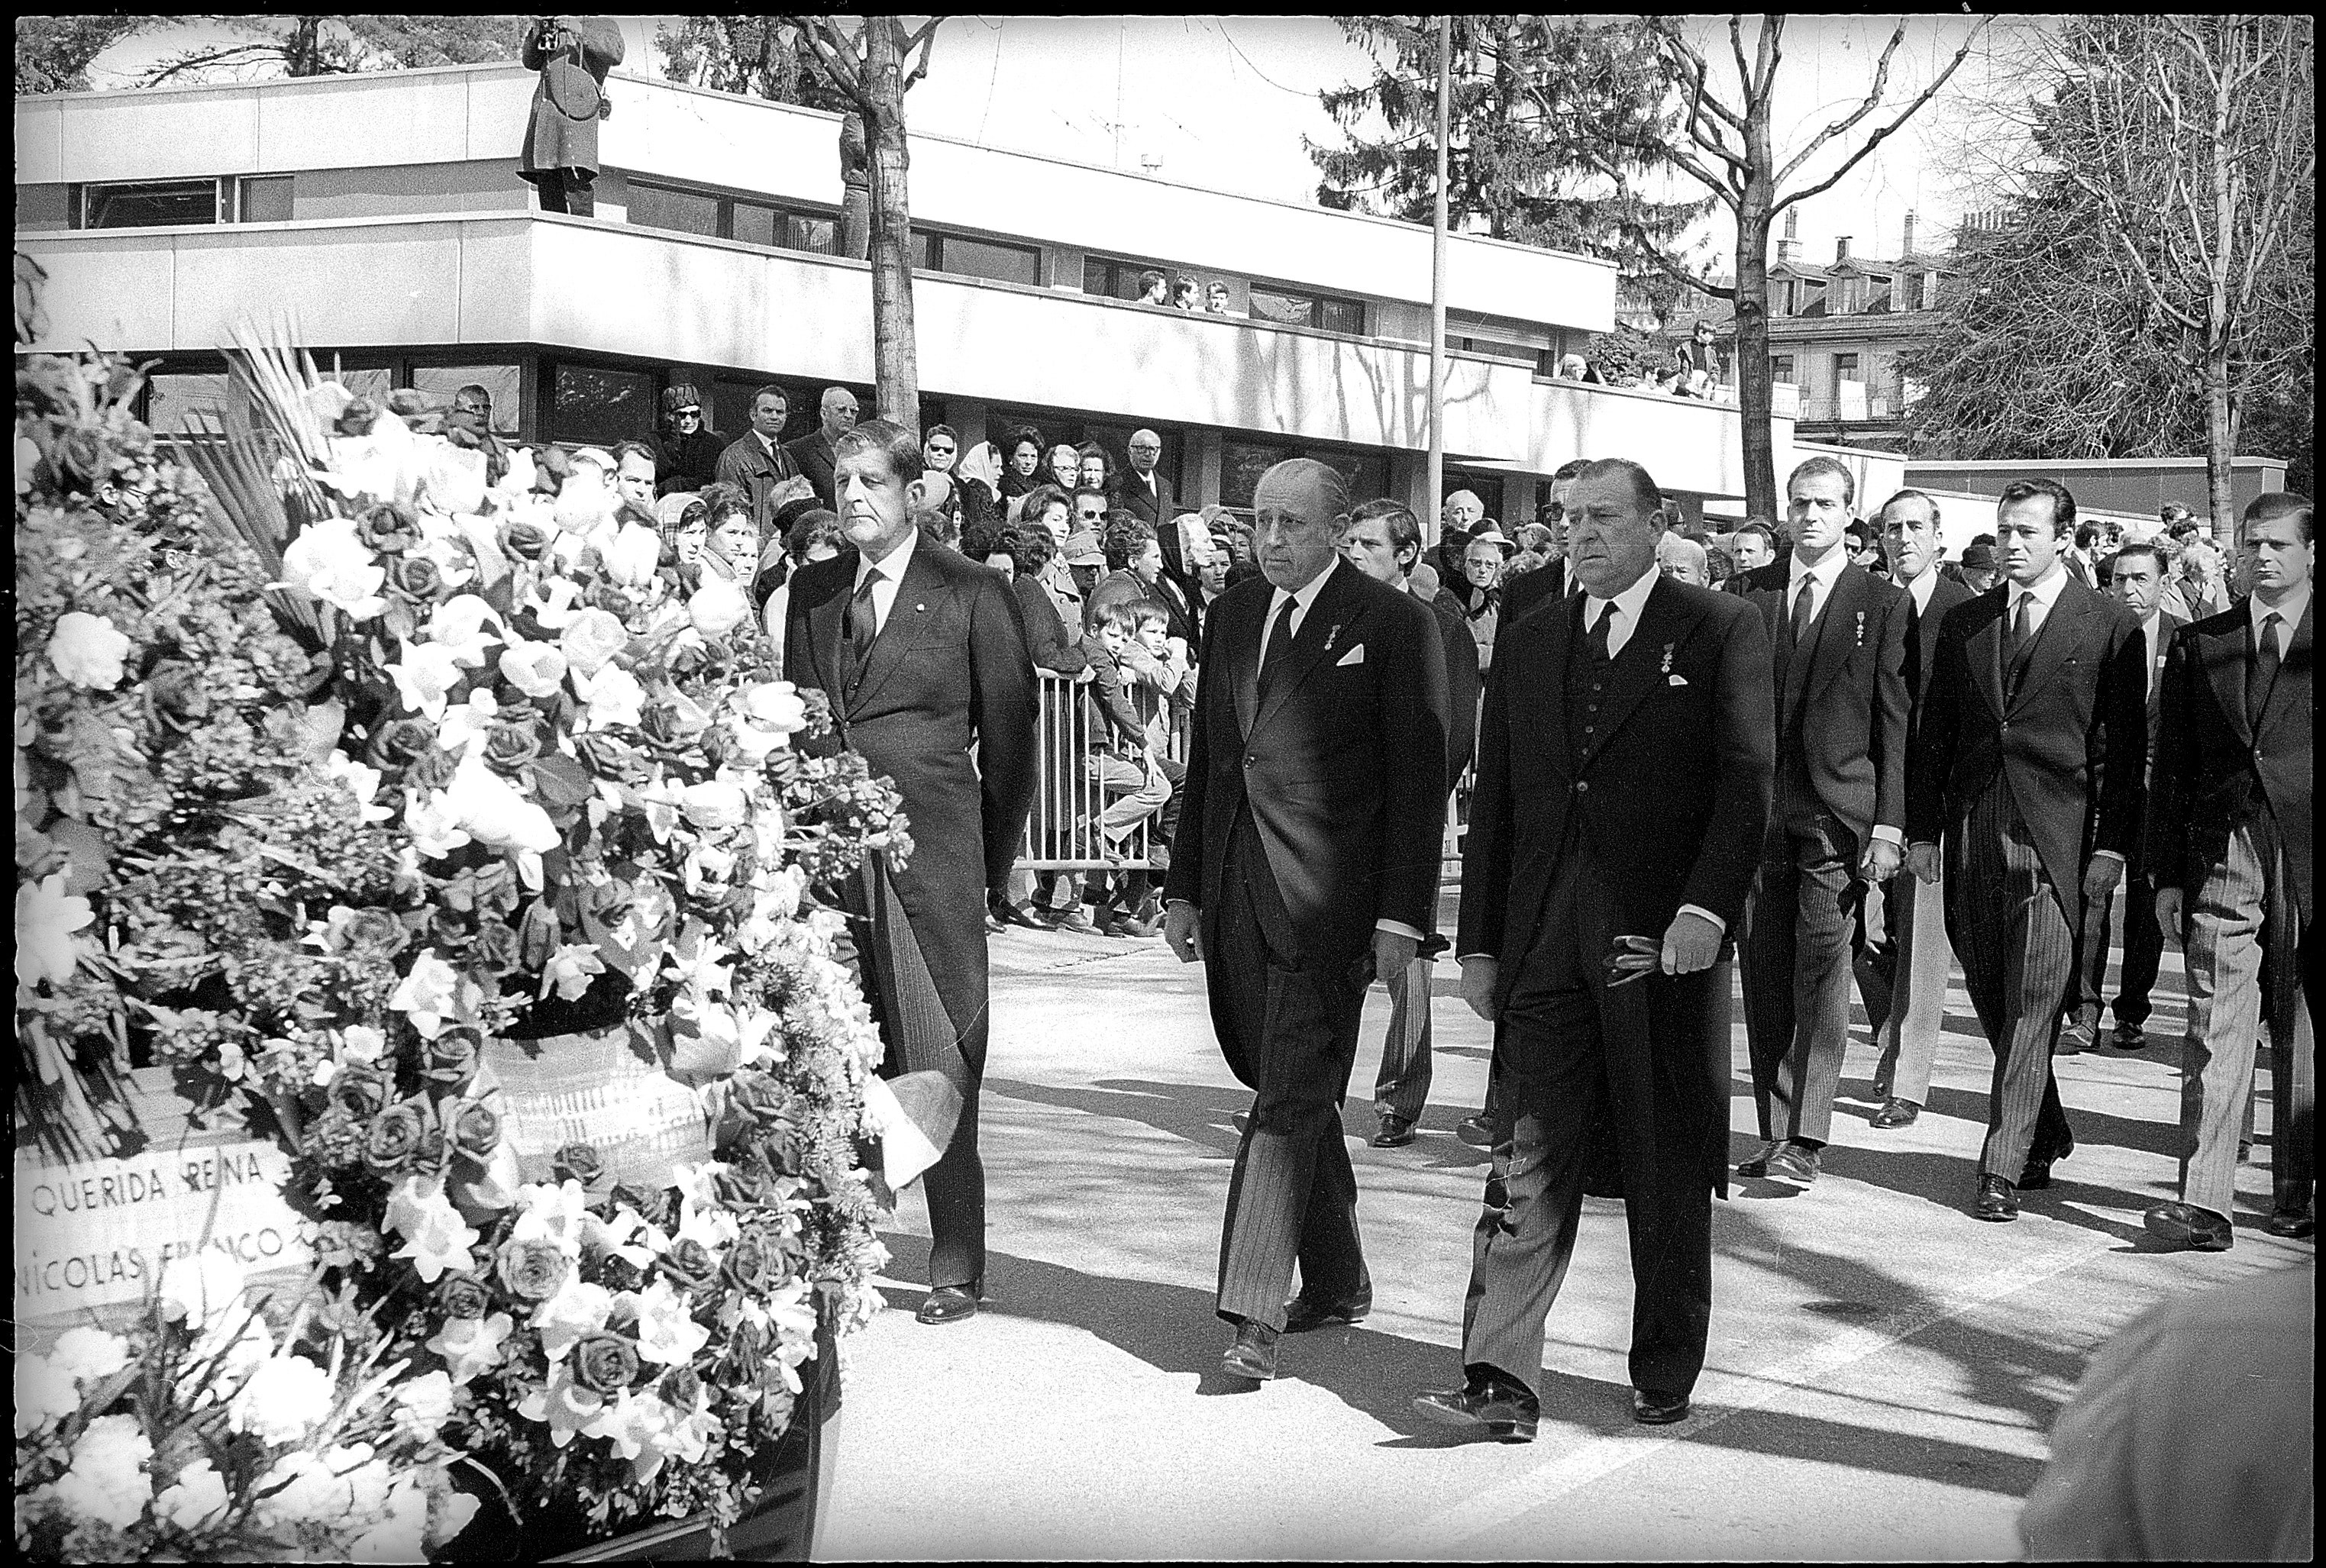 55 años del funeral de victoria eugenia de battenberg: un adiós marcado por una pelea entre hermanos (y otra entre padre e hijo)